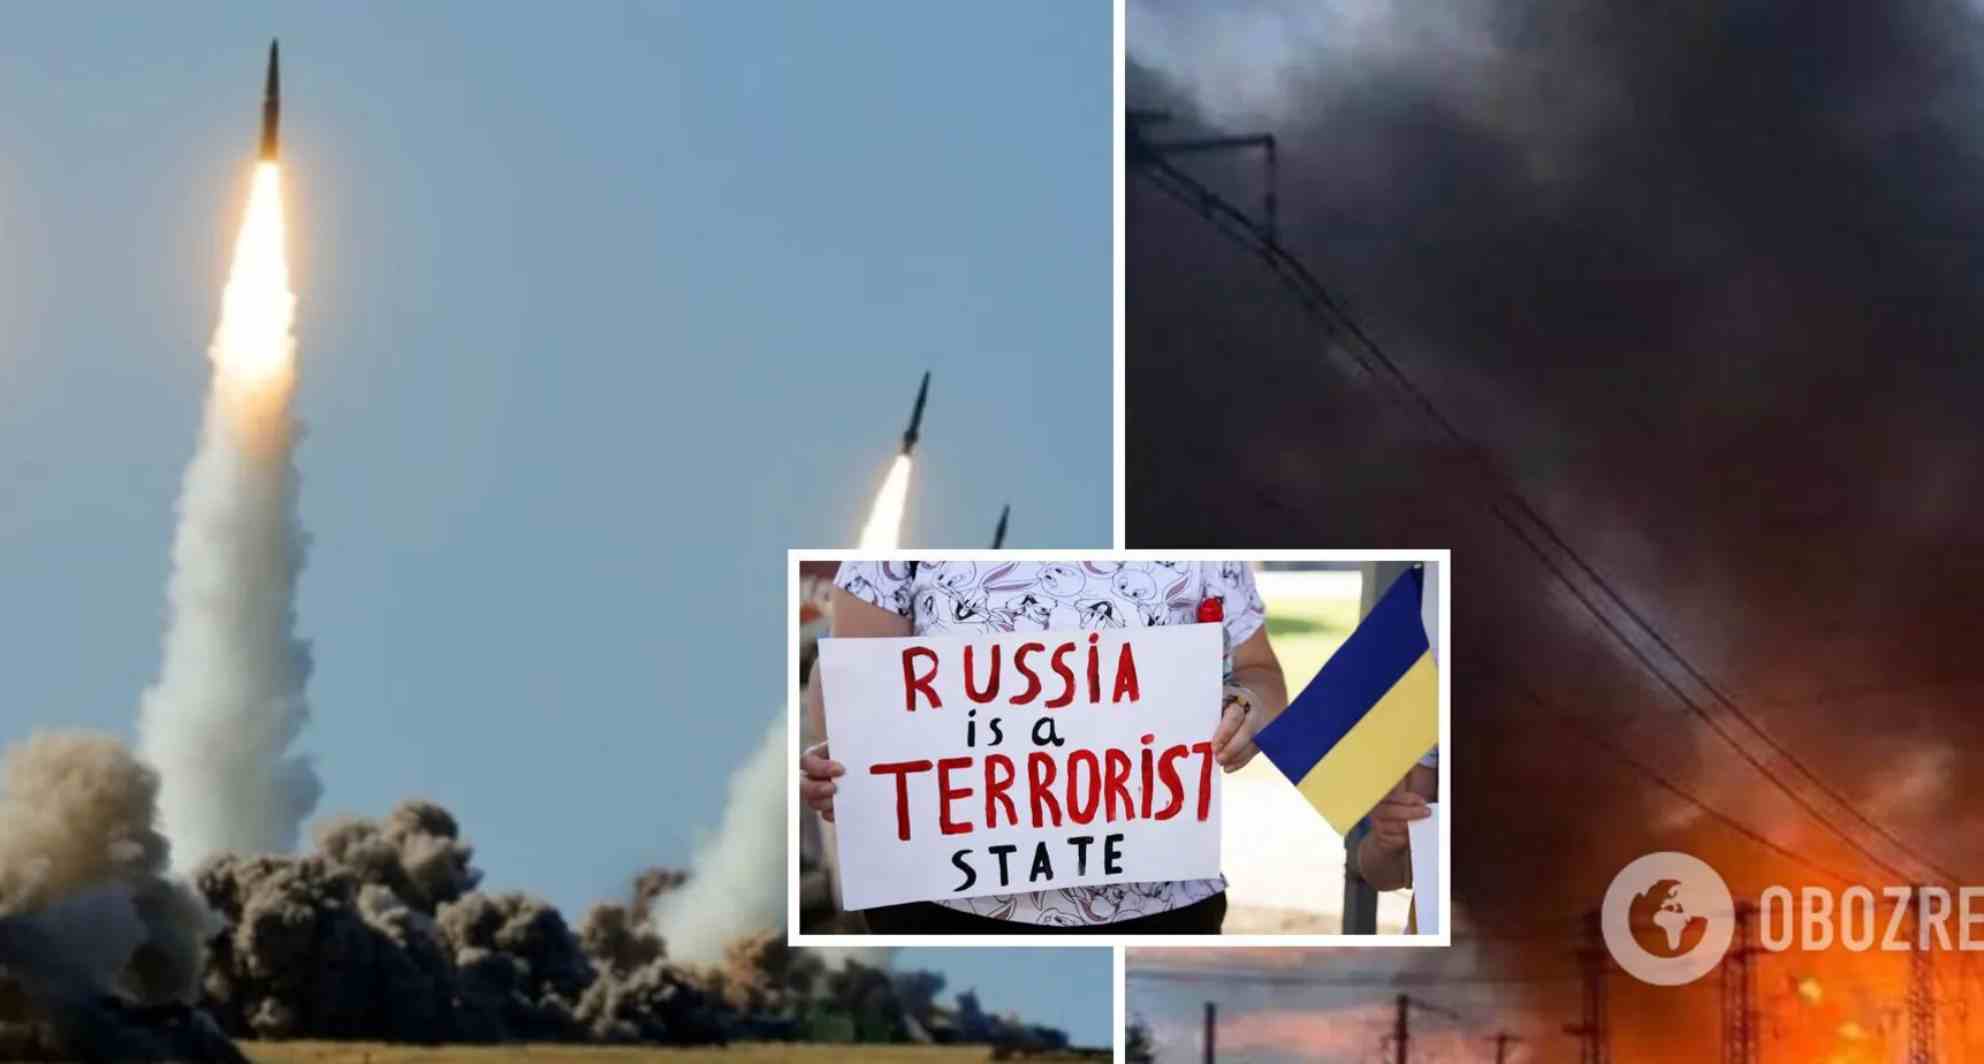 “Час переносити бойові дії на територію США”: росіяни зраділи ракетним ударам по Україні і розмріялися про велику помсту